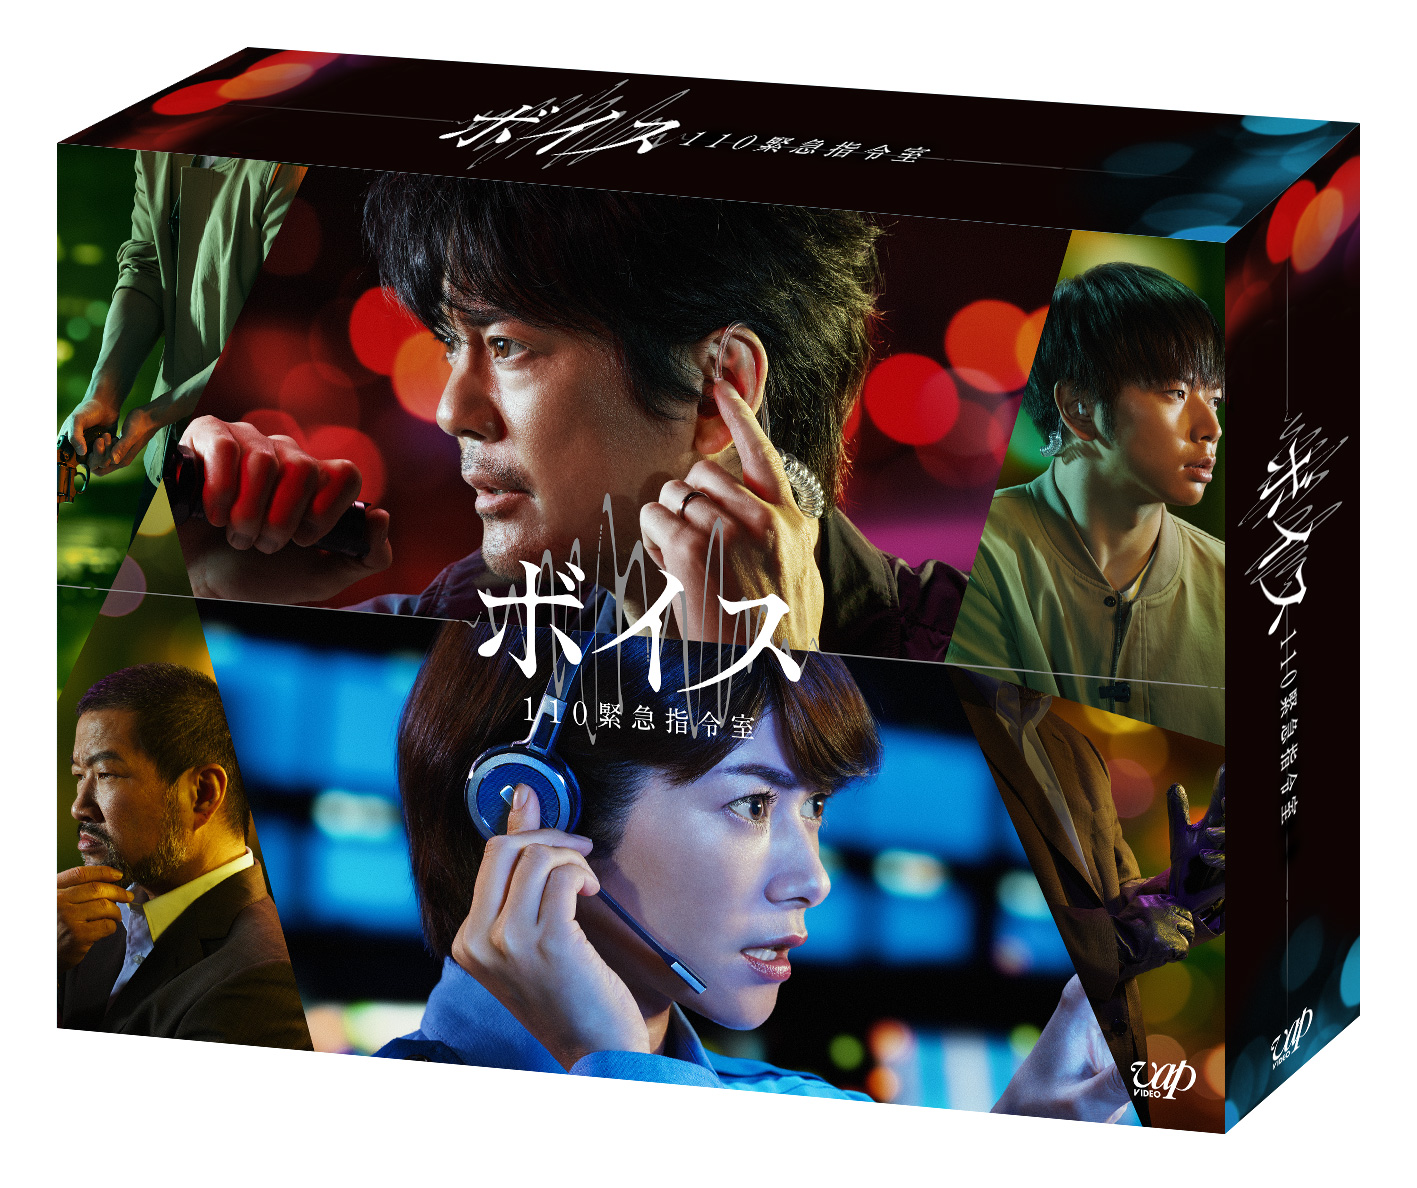 楽天ブックス: ボイス 110緊急指令室 DVD BOX - 唐沢寿明